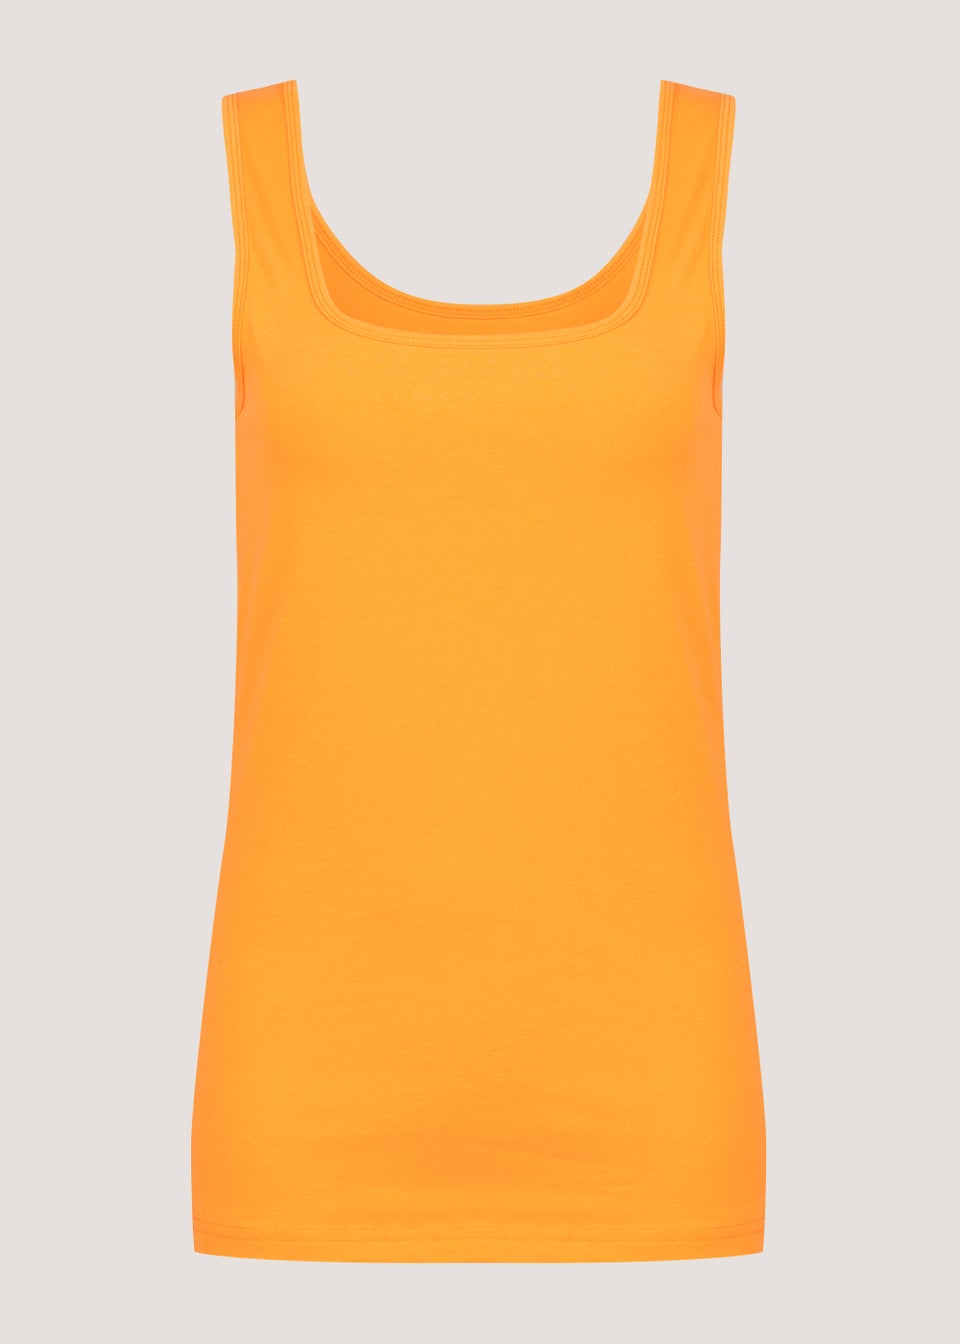 Orange Short Vest Top